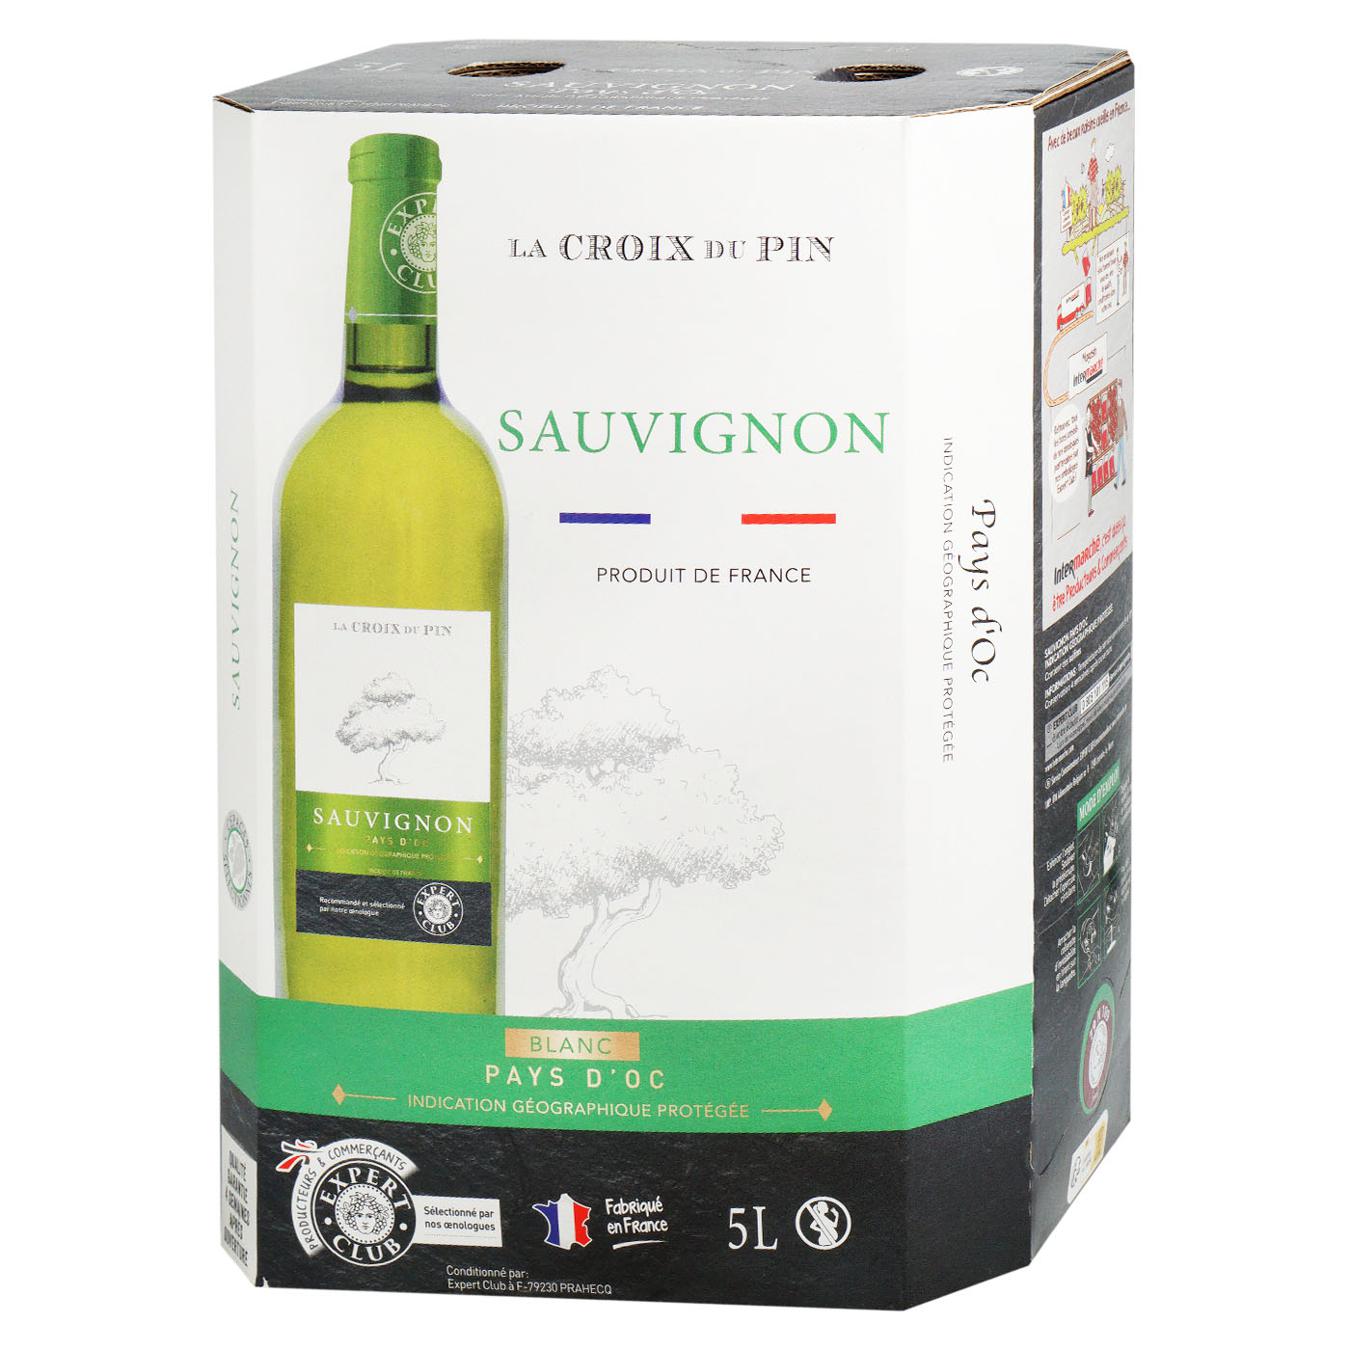 La Croix du Pin Sauvignon white dry wine 12% 5 l